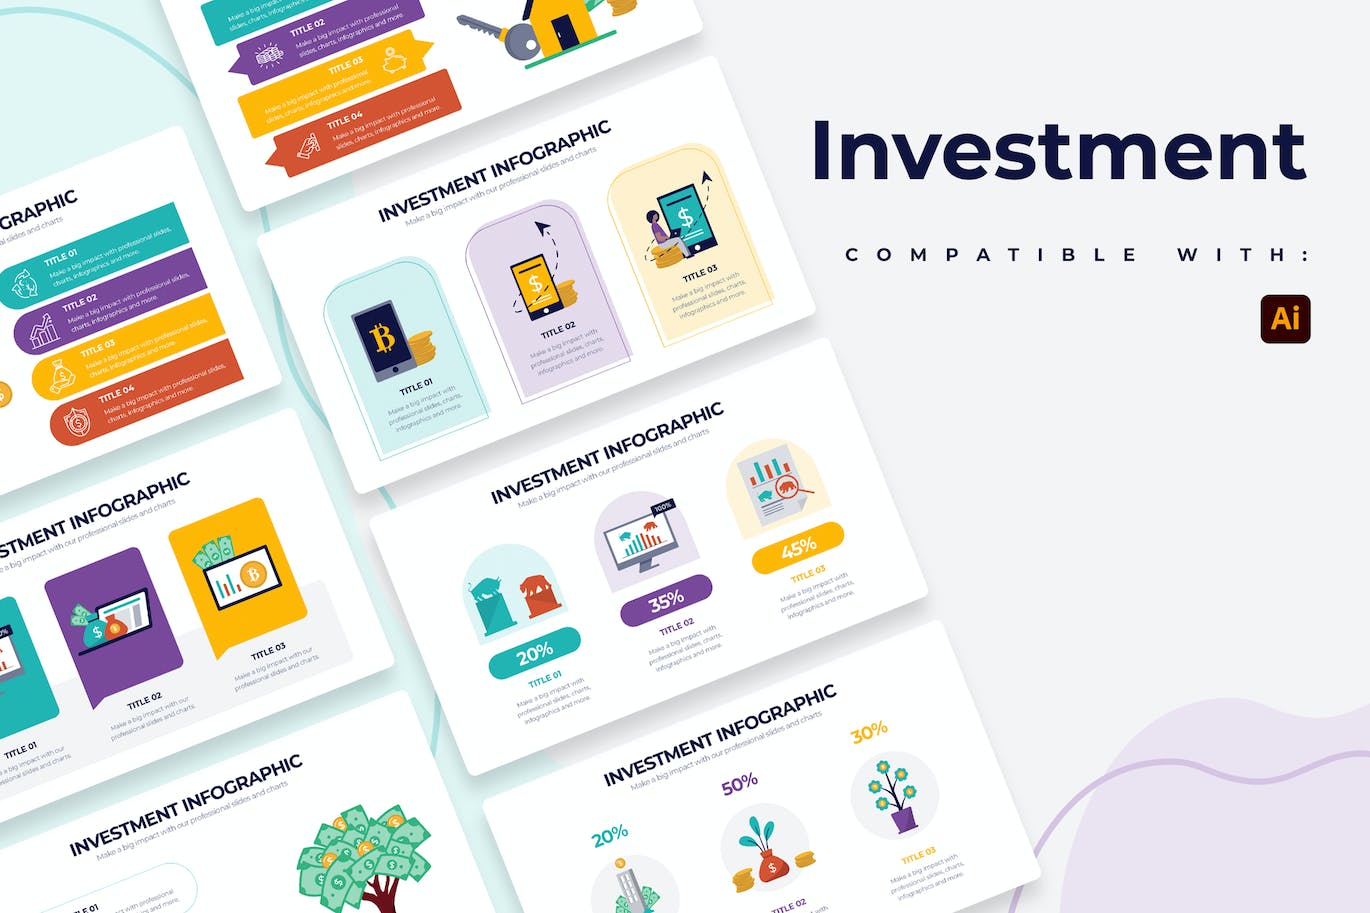 股票投资信息图表矢量模板 Business Investment Illustrator Infographics 幻灯图表 第1张